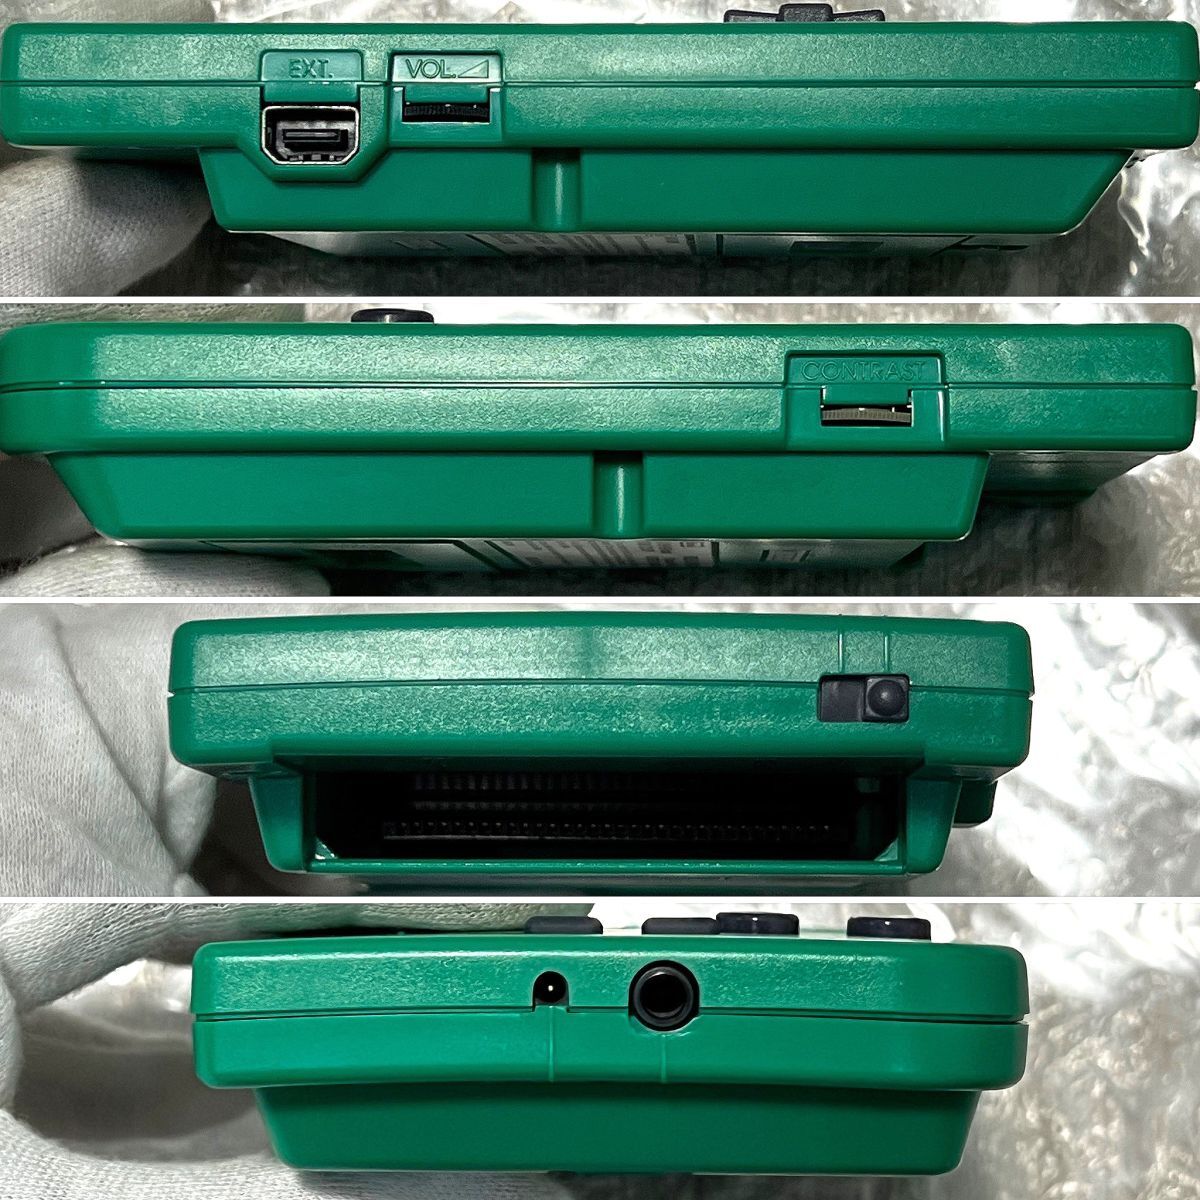 〈本体美品・画面ほぼ無傷・動作確認済み・箱説付属〉GB ゲームボーイポケット 本体 後期型 MGB-001 グリーン GAMEBOY Pocket Green 緑_画像8